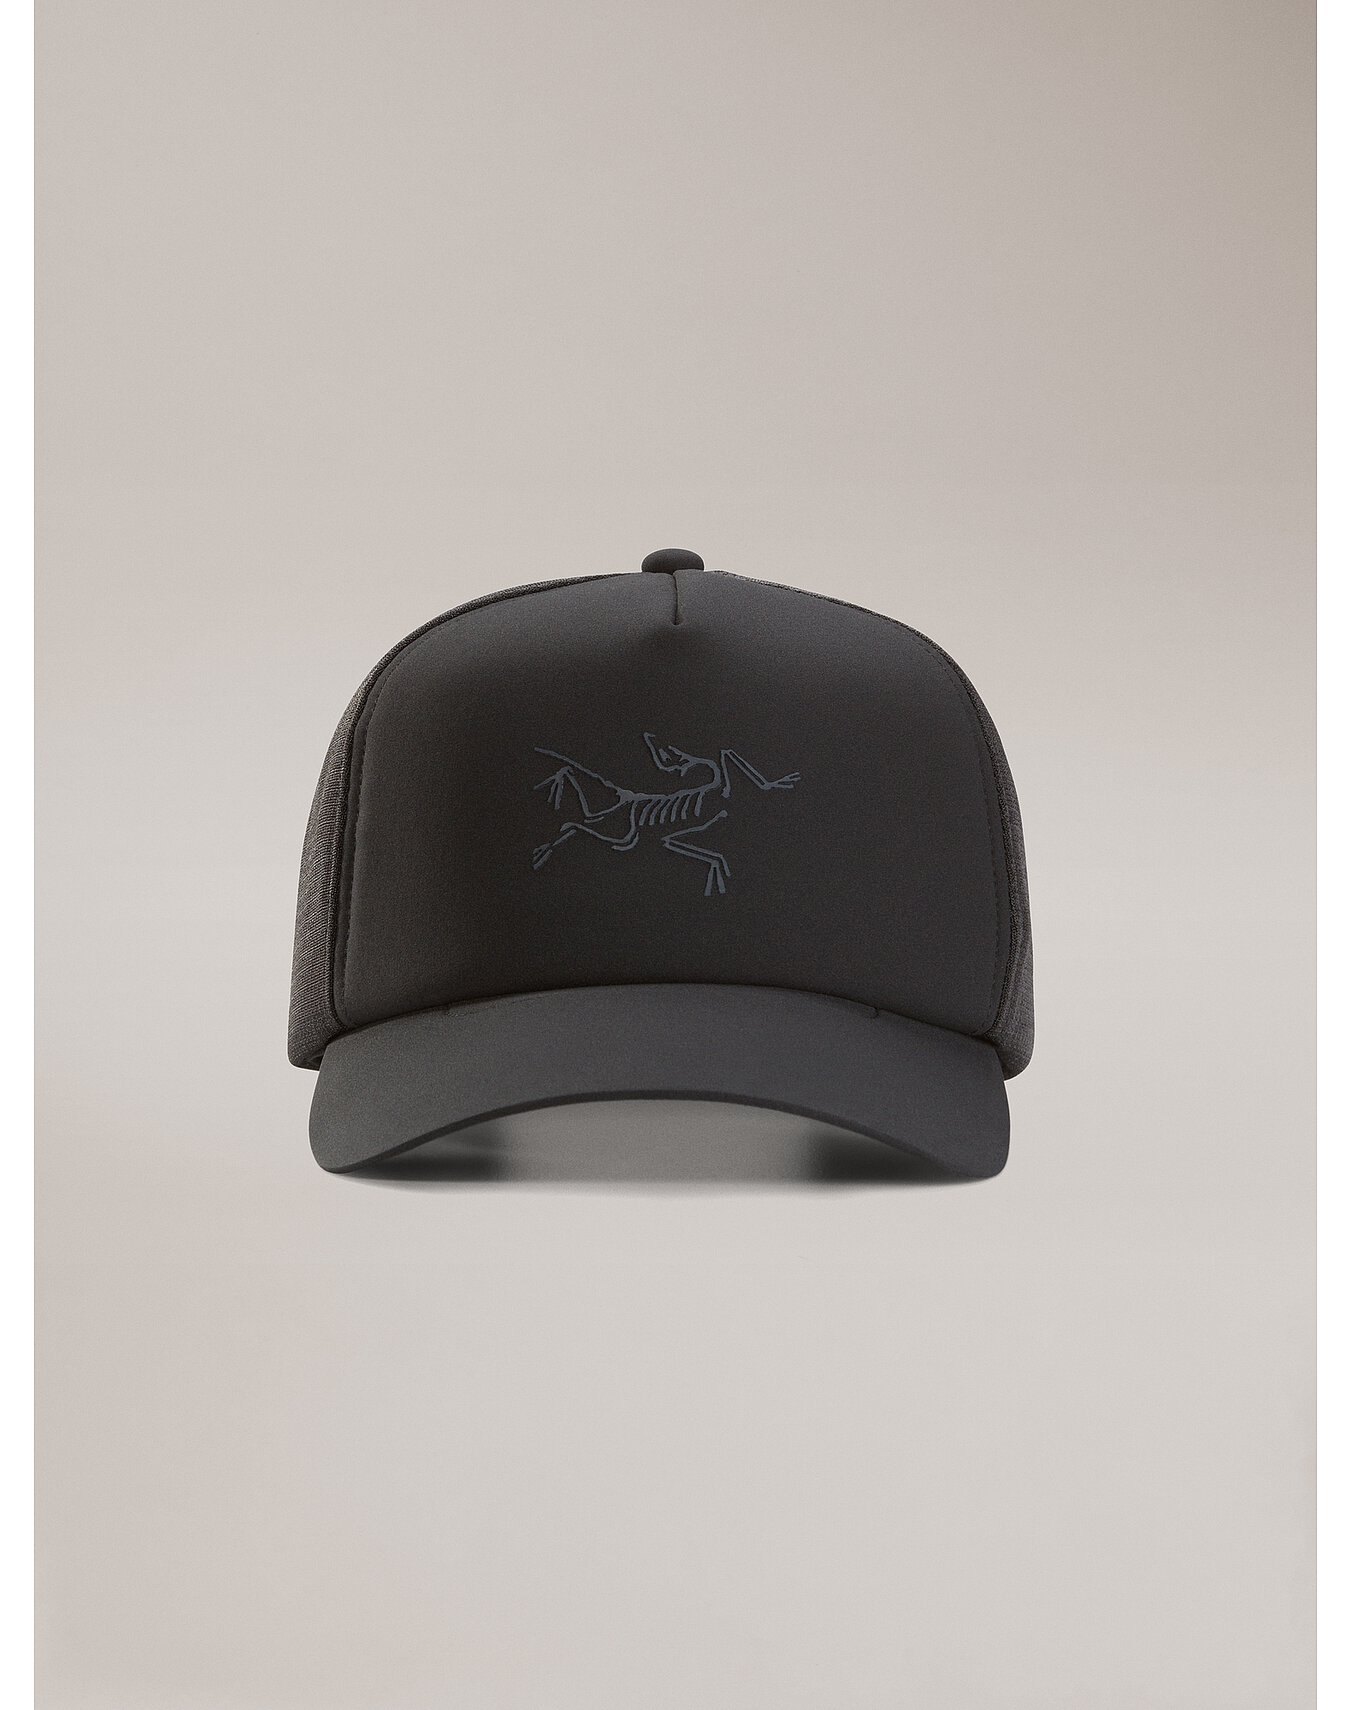 Bird Curved Brim Trucker Hat | Arc'teryx